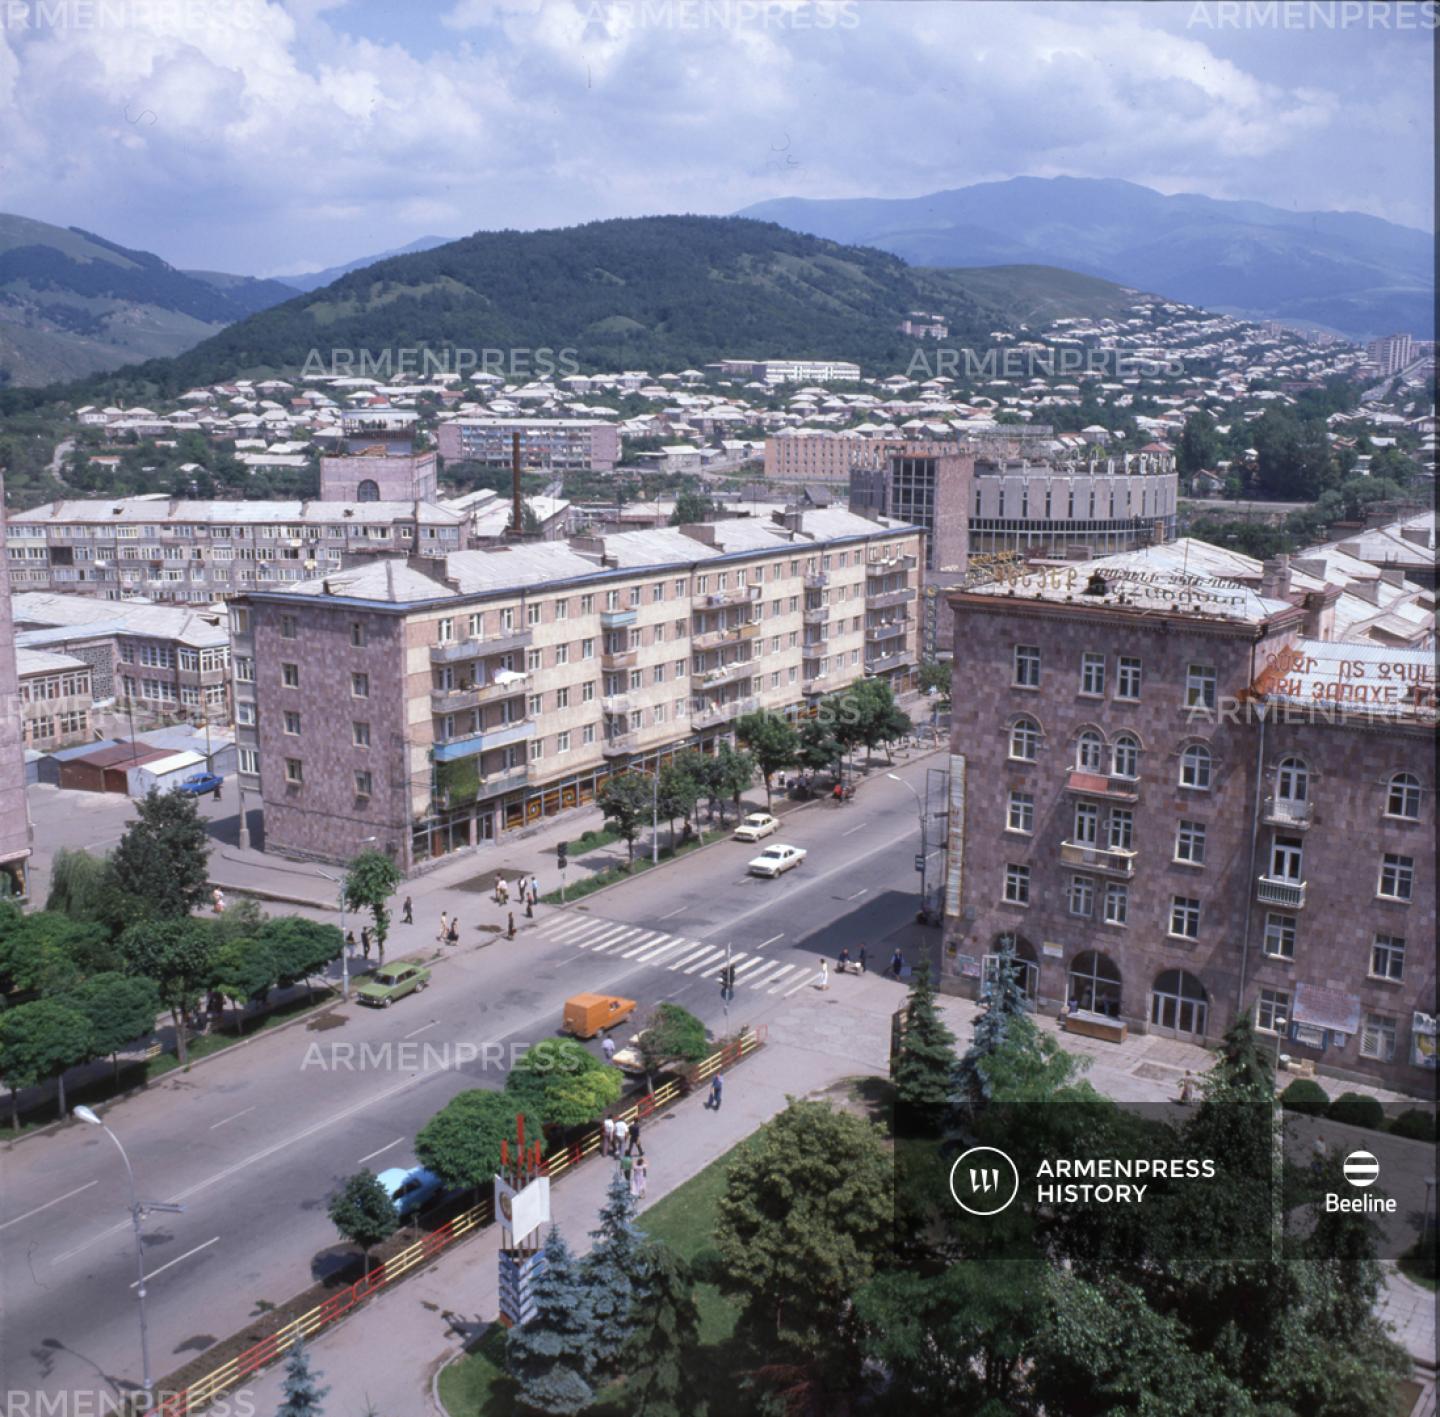 Տեսարան Կիրովական քաղաքից